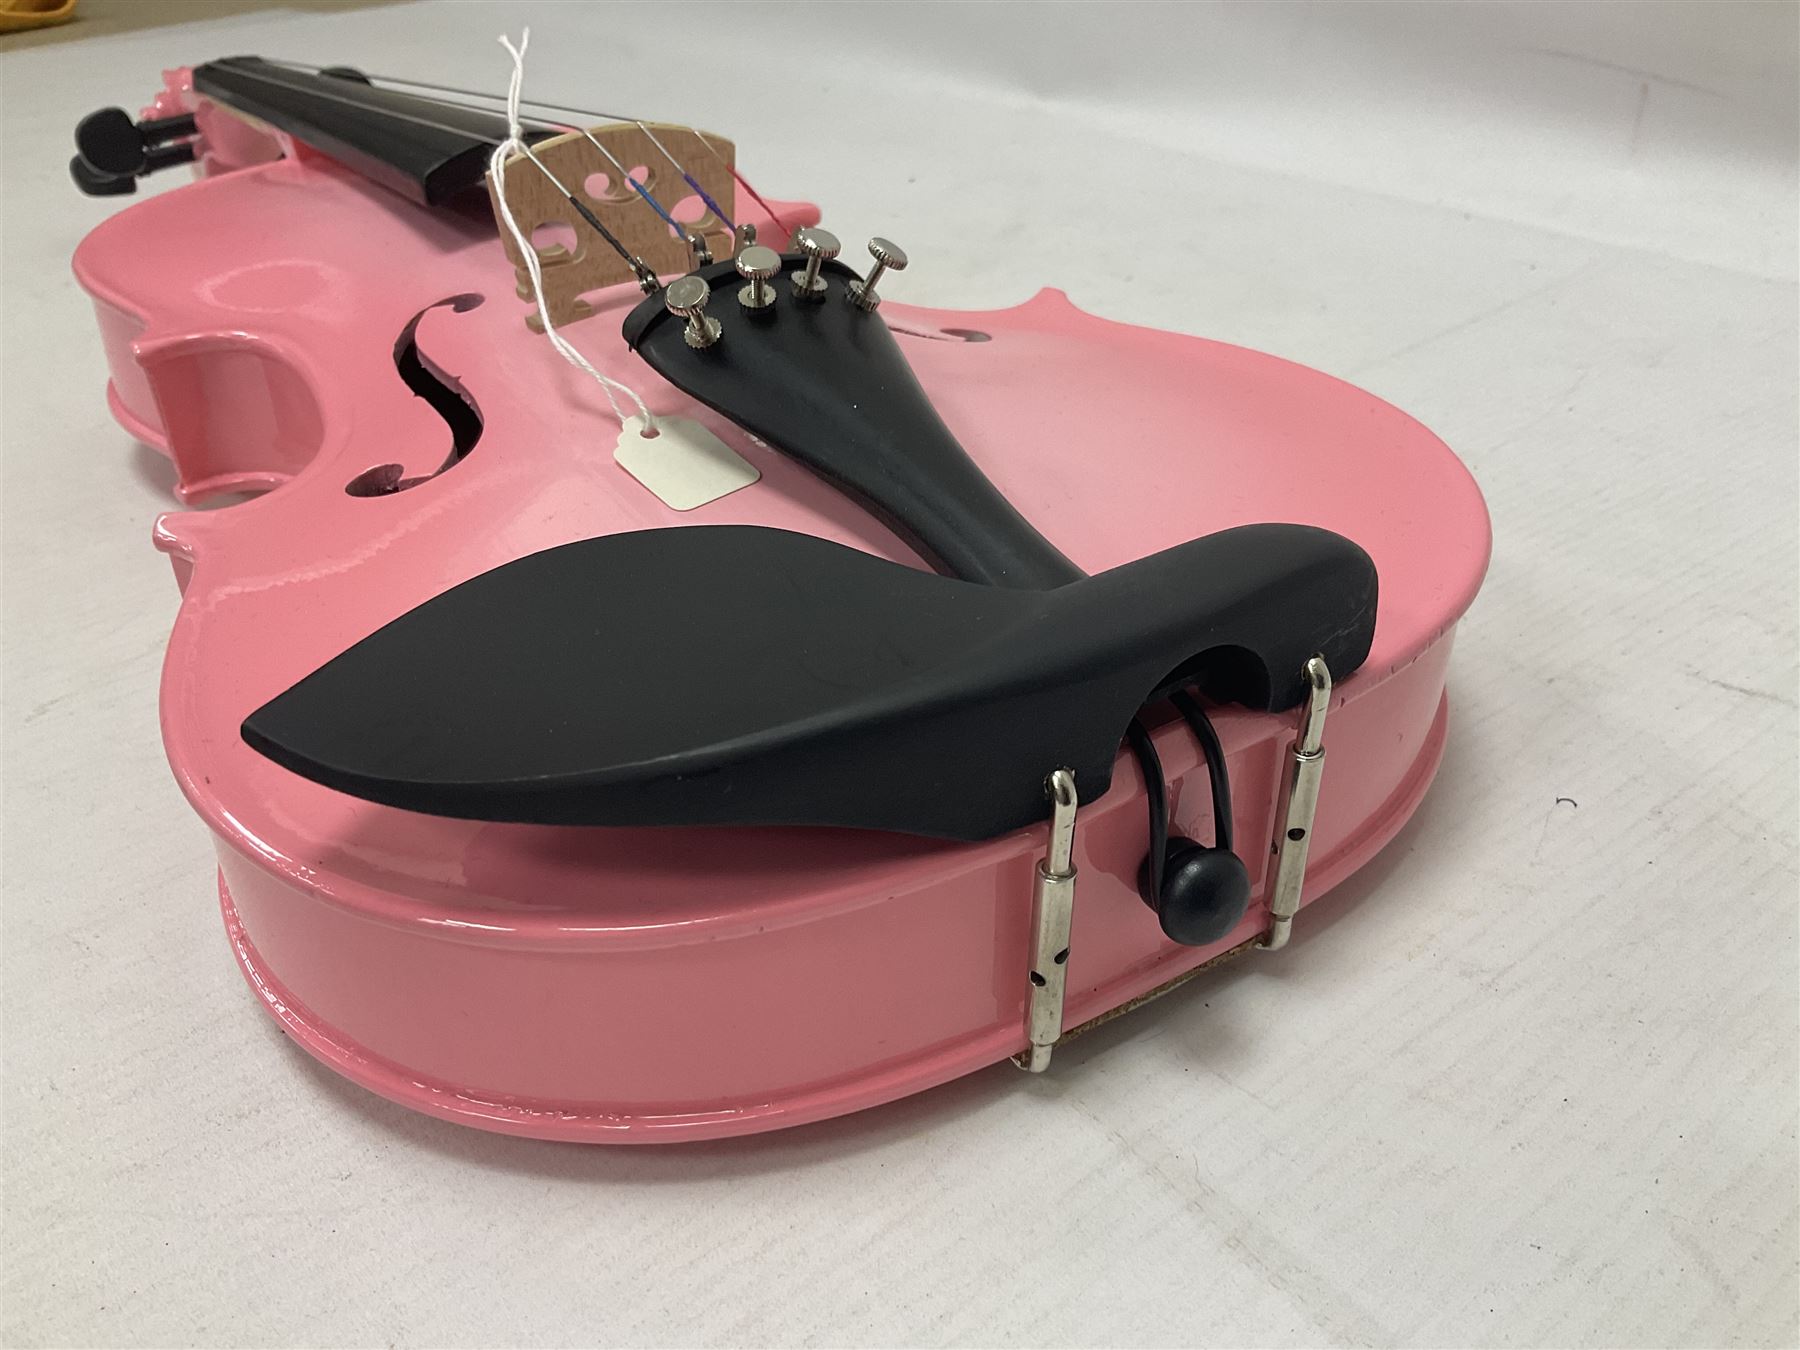 Zest full size pink violin - Image 17 of 32